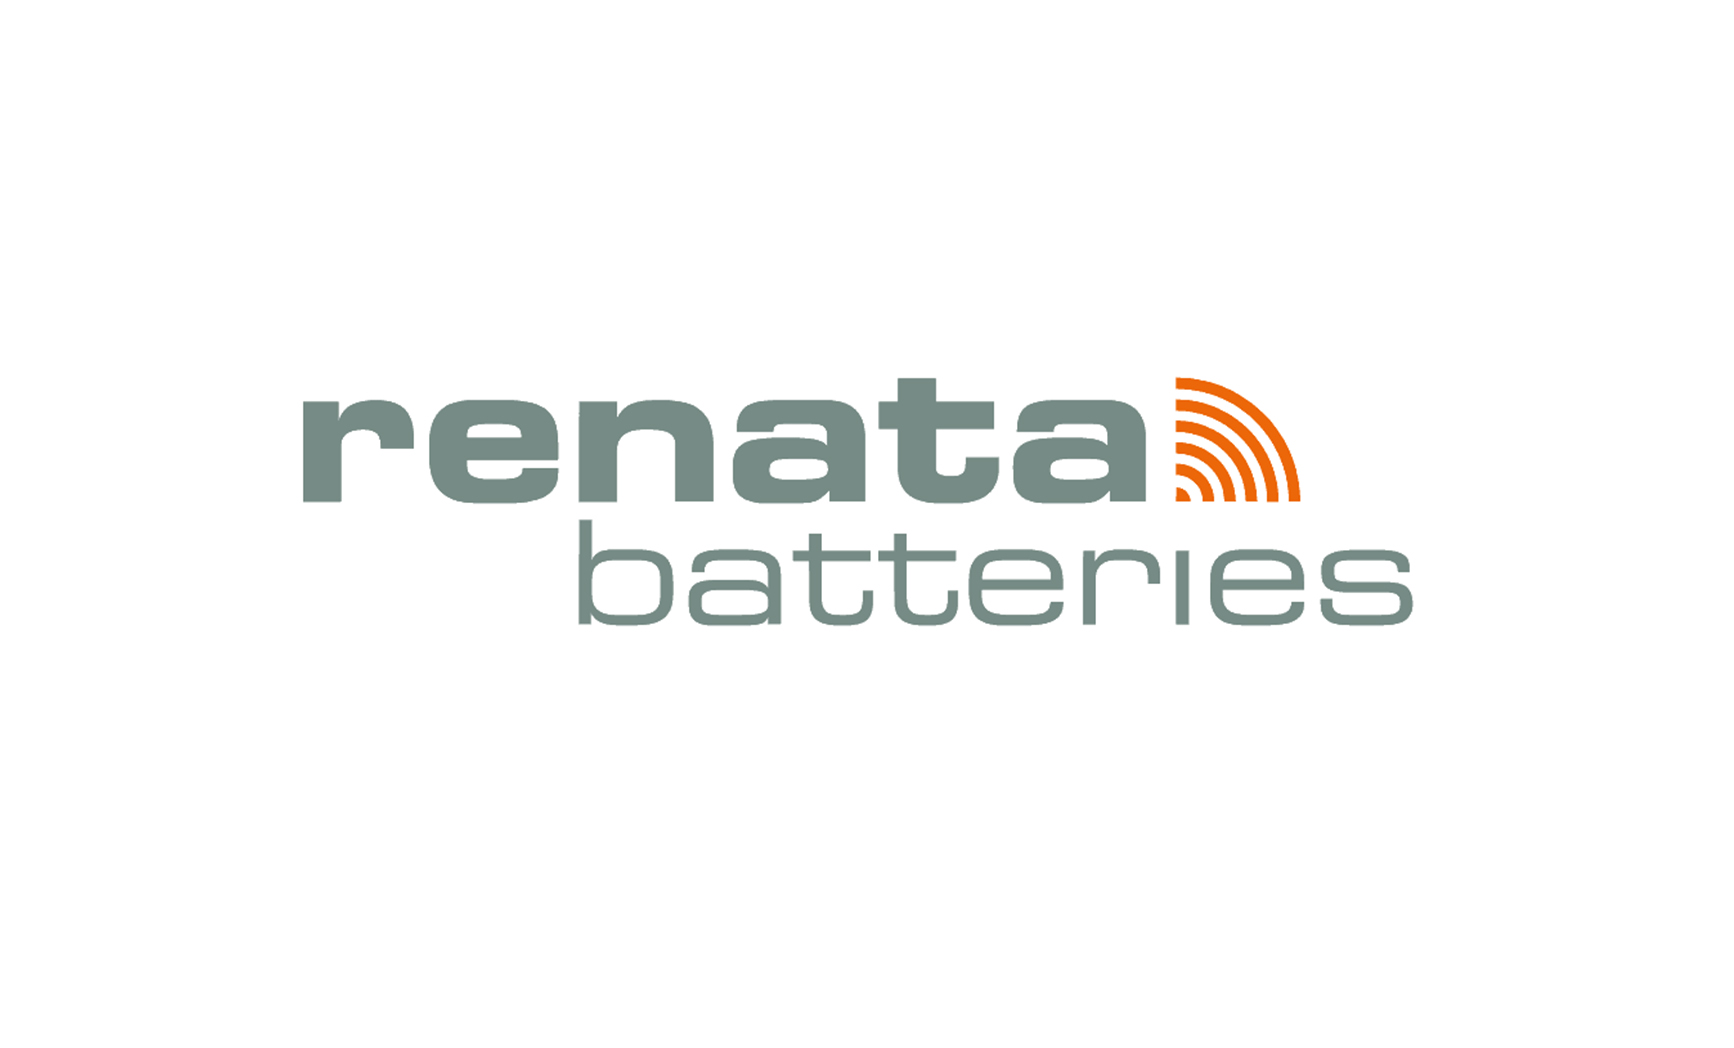 renata batteries